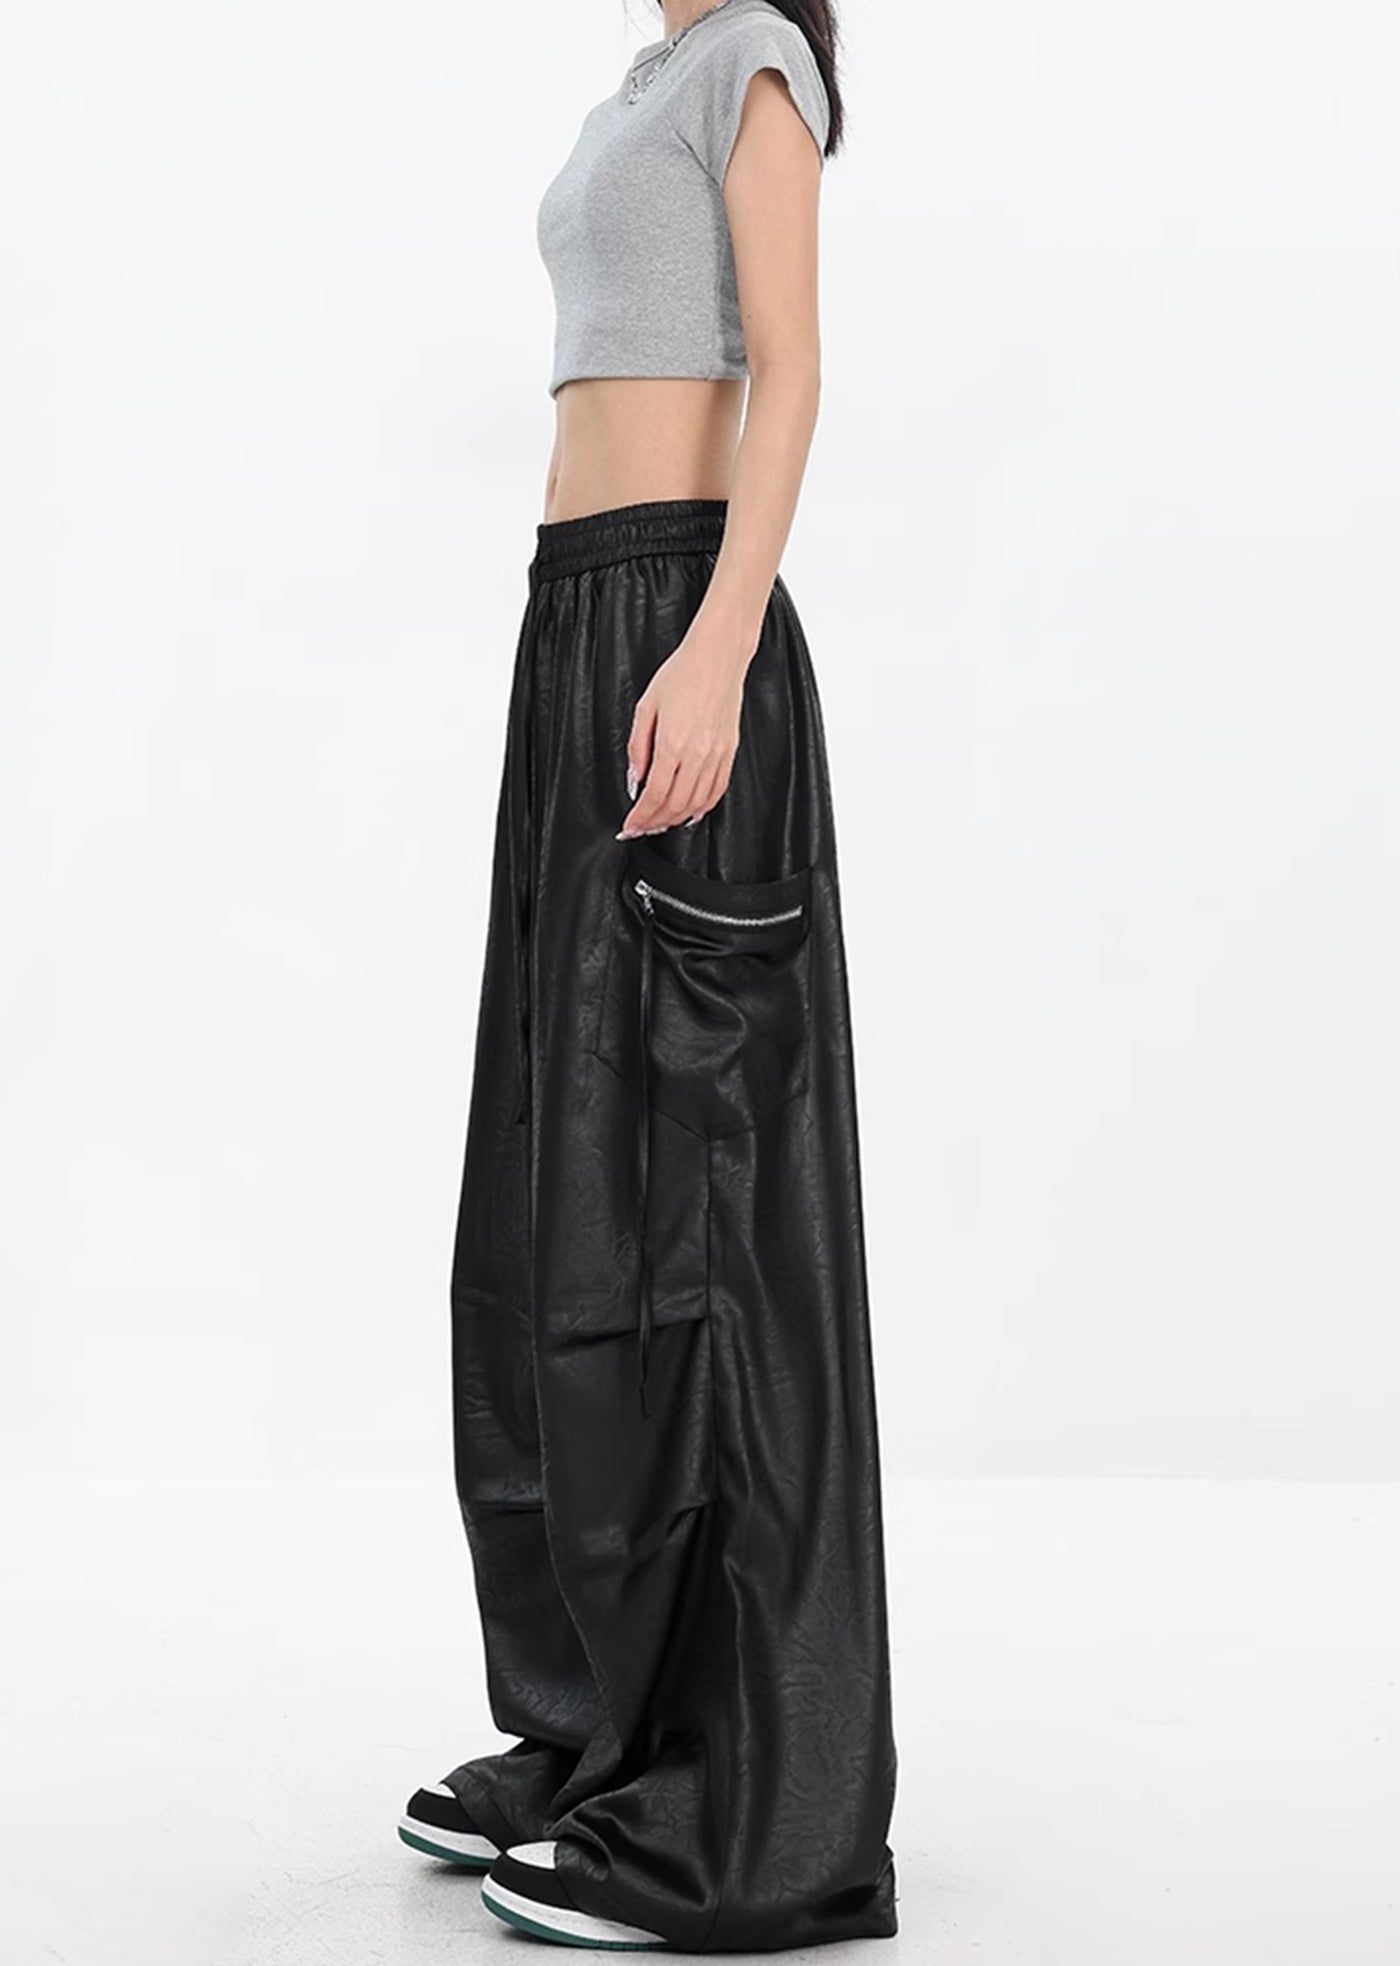 【Ken studio】Loose silhouette design multi-color leather pants  KS0011